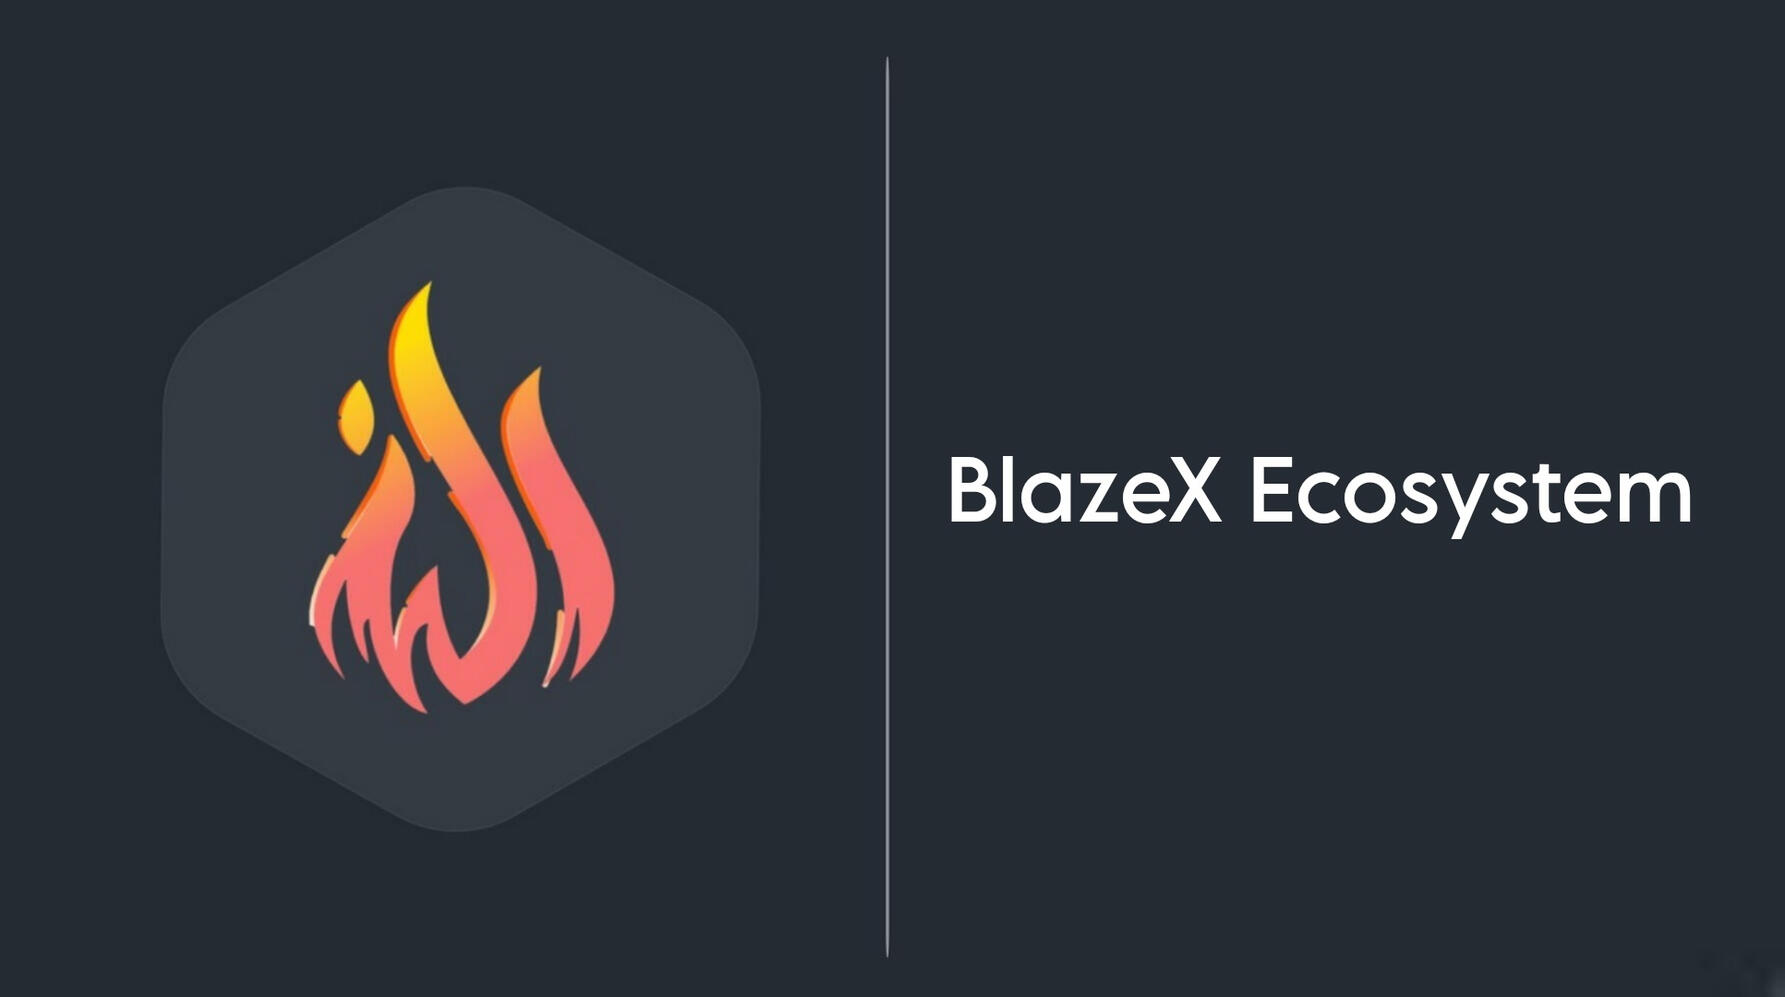 BlazeX